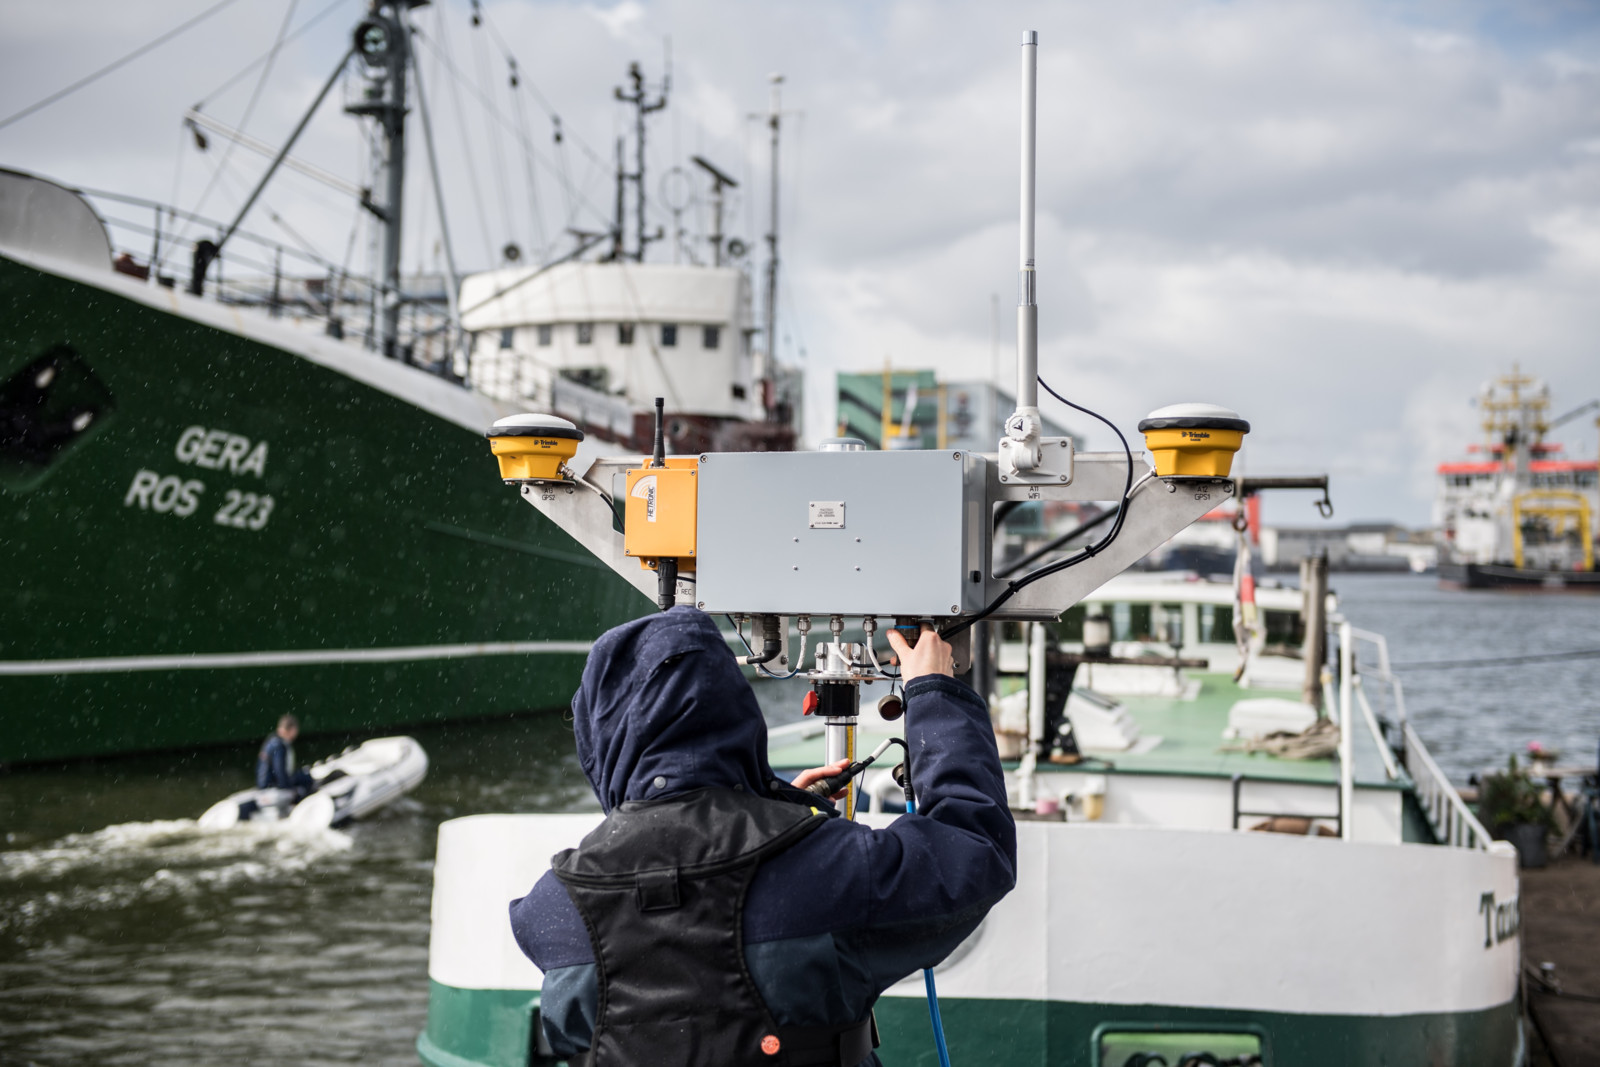 Geeignete Lagebildsysteme können den Schutz maritimer Infrastrukturen gewährleisten. Hier wird der Hafen mit Instrumenten und Kommunikationssystemen instrumentiert.